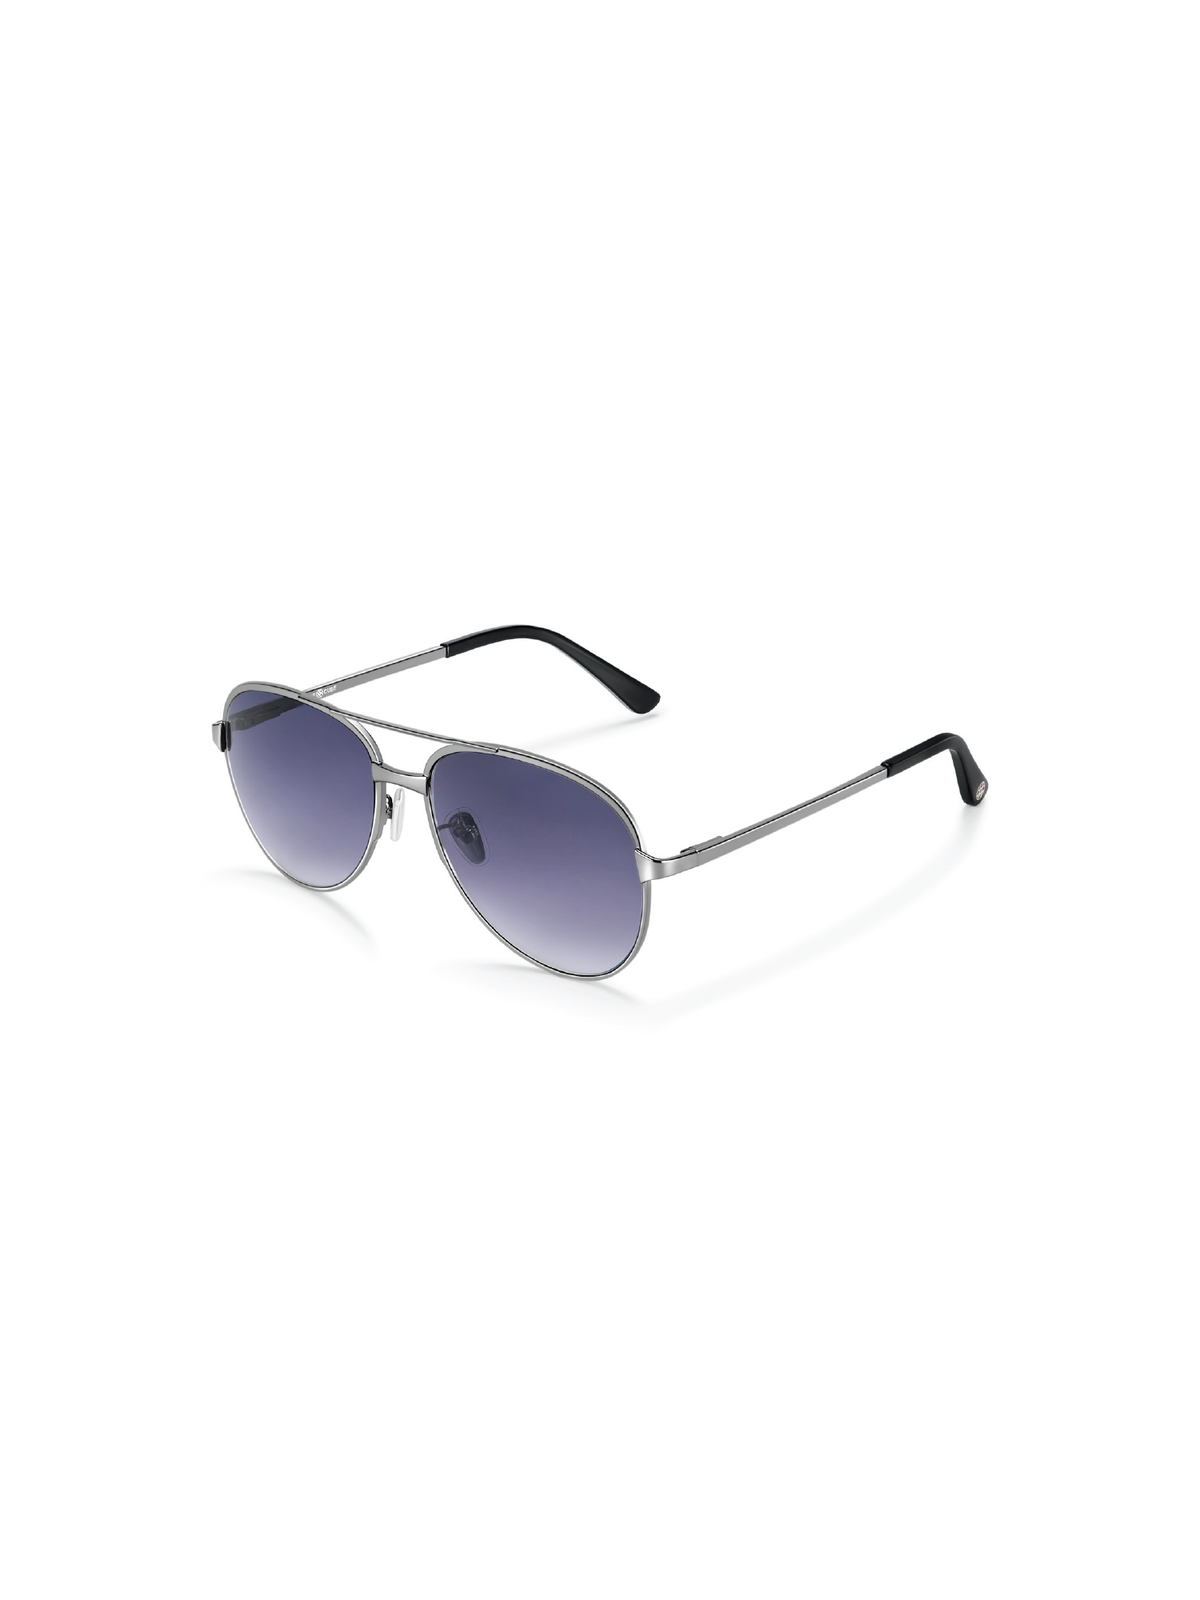 Pilot Sunglasses - Grey Gradient (Gun Colour Frame)